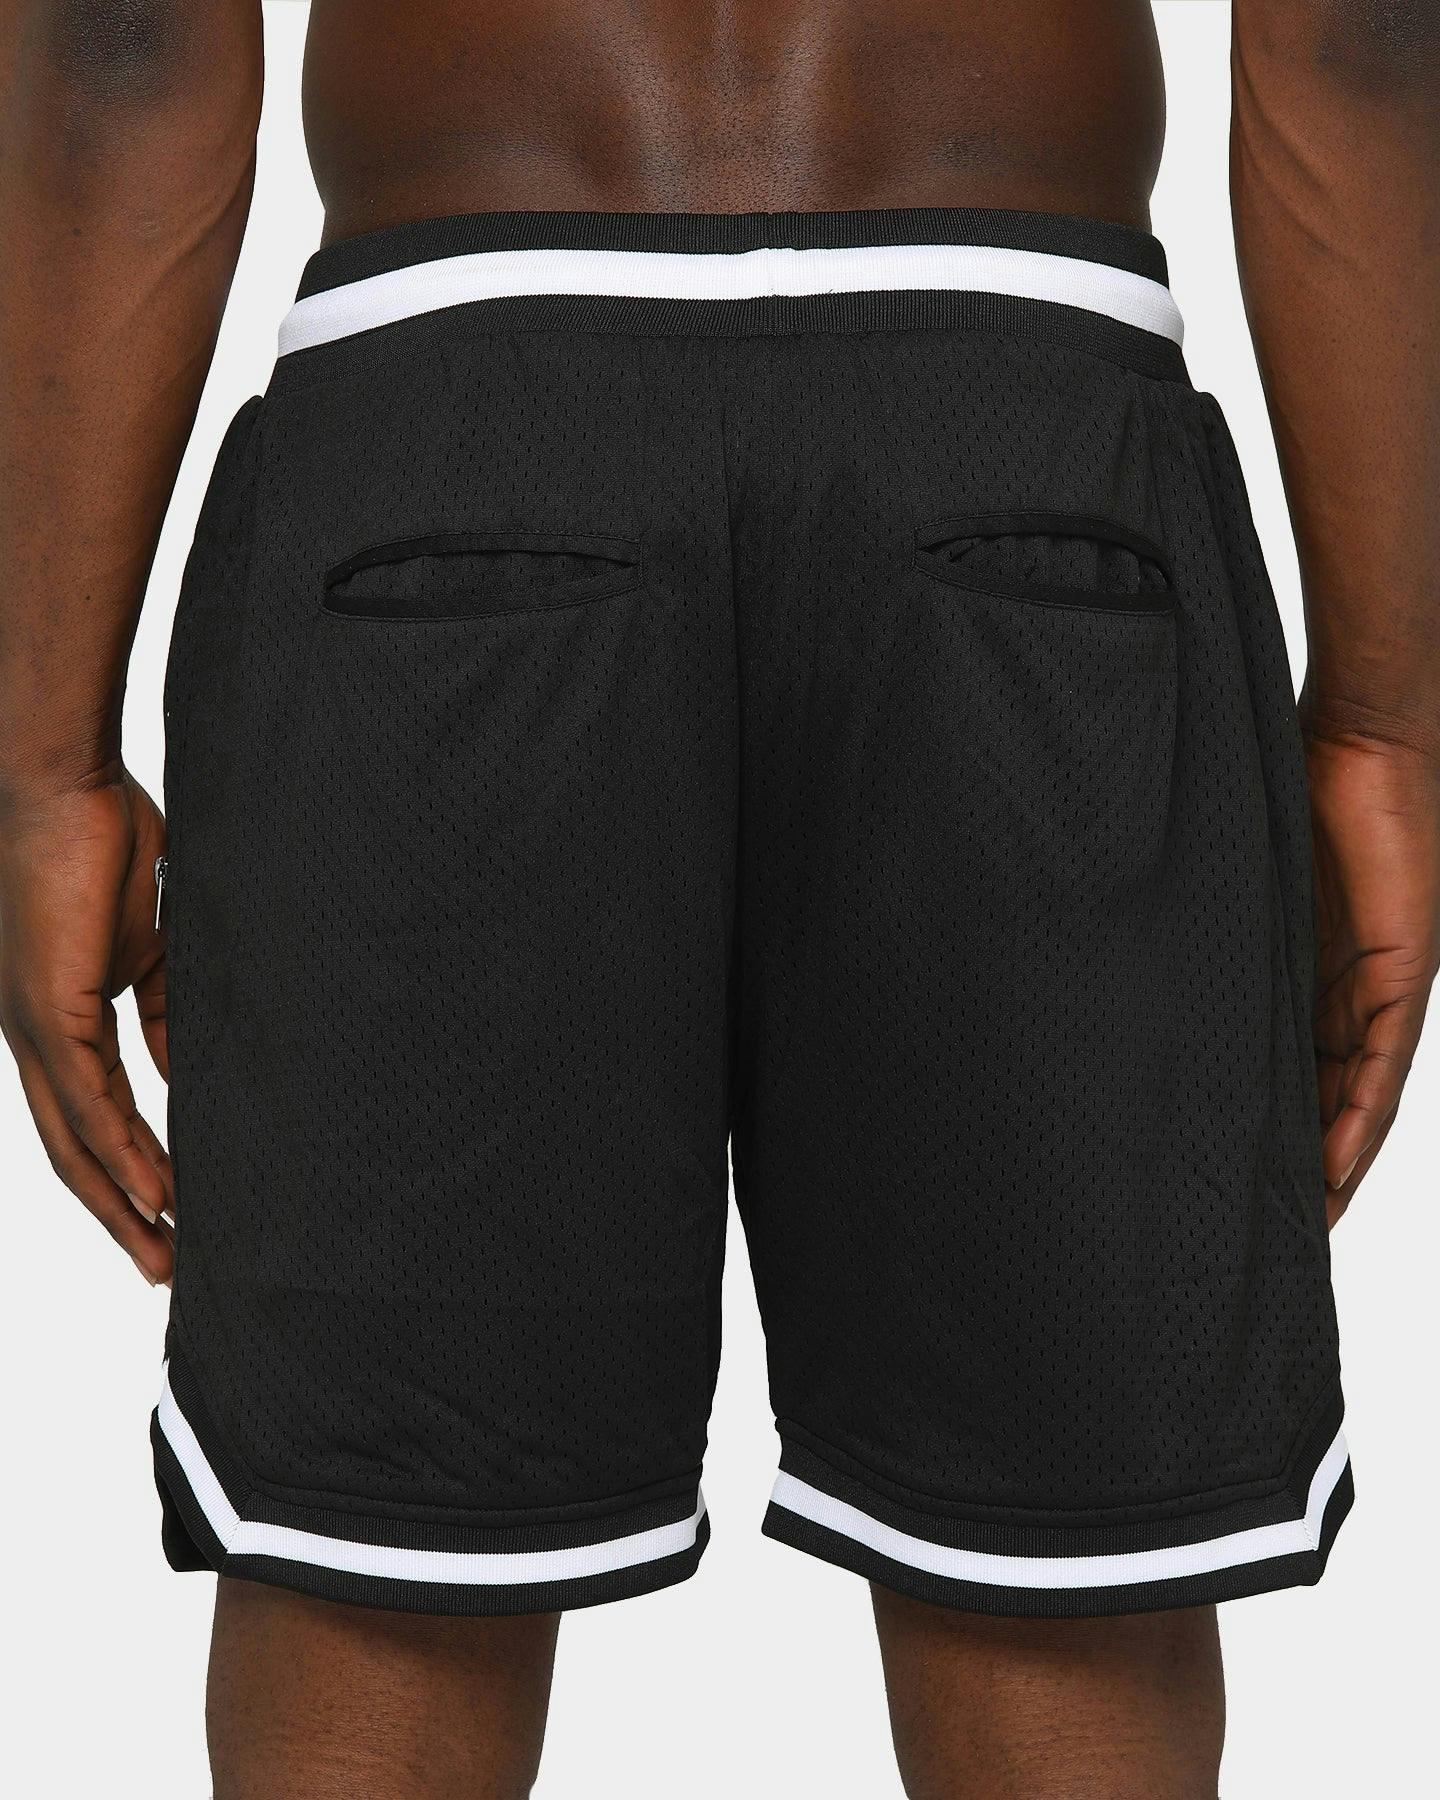 Saint Morta Men's Icon Mesh Basketball Short Black/White | Culture Kings US